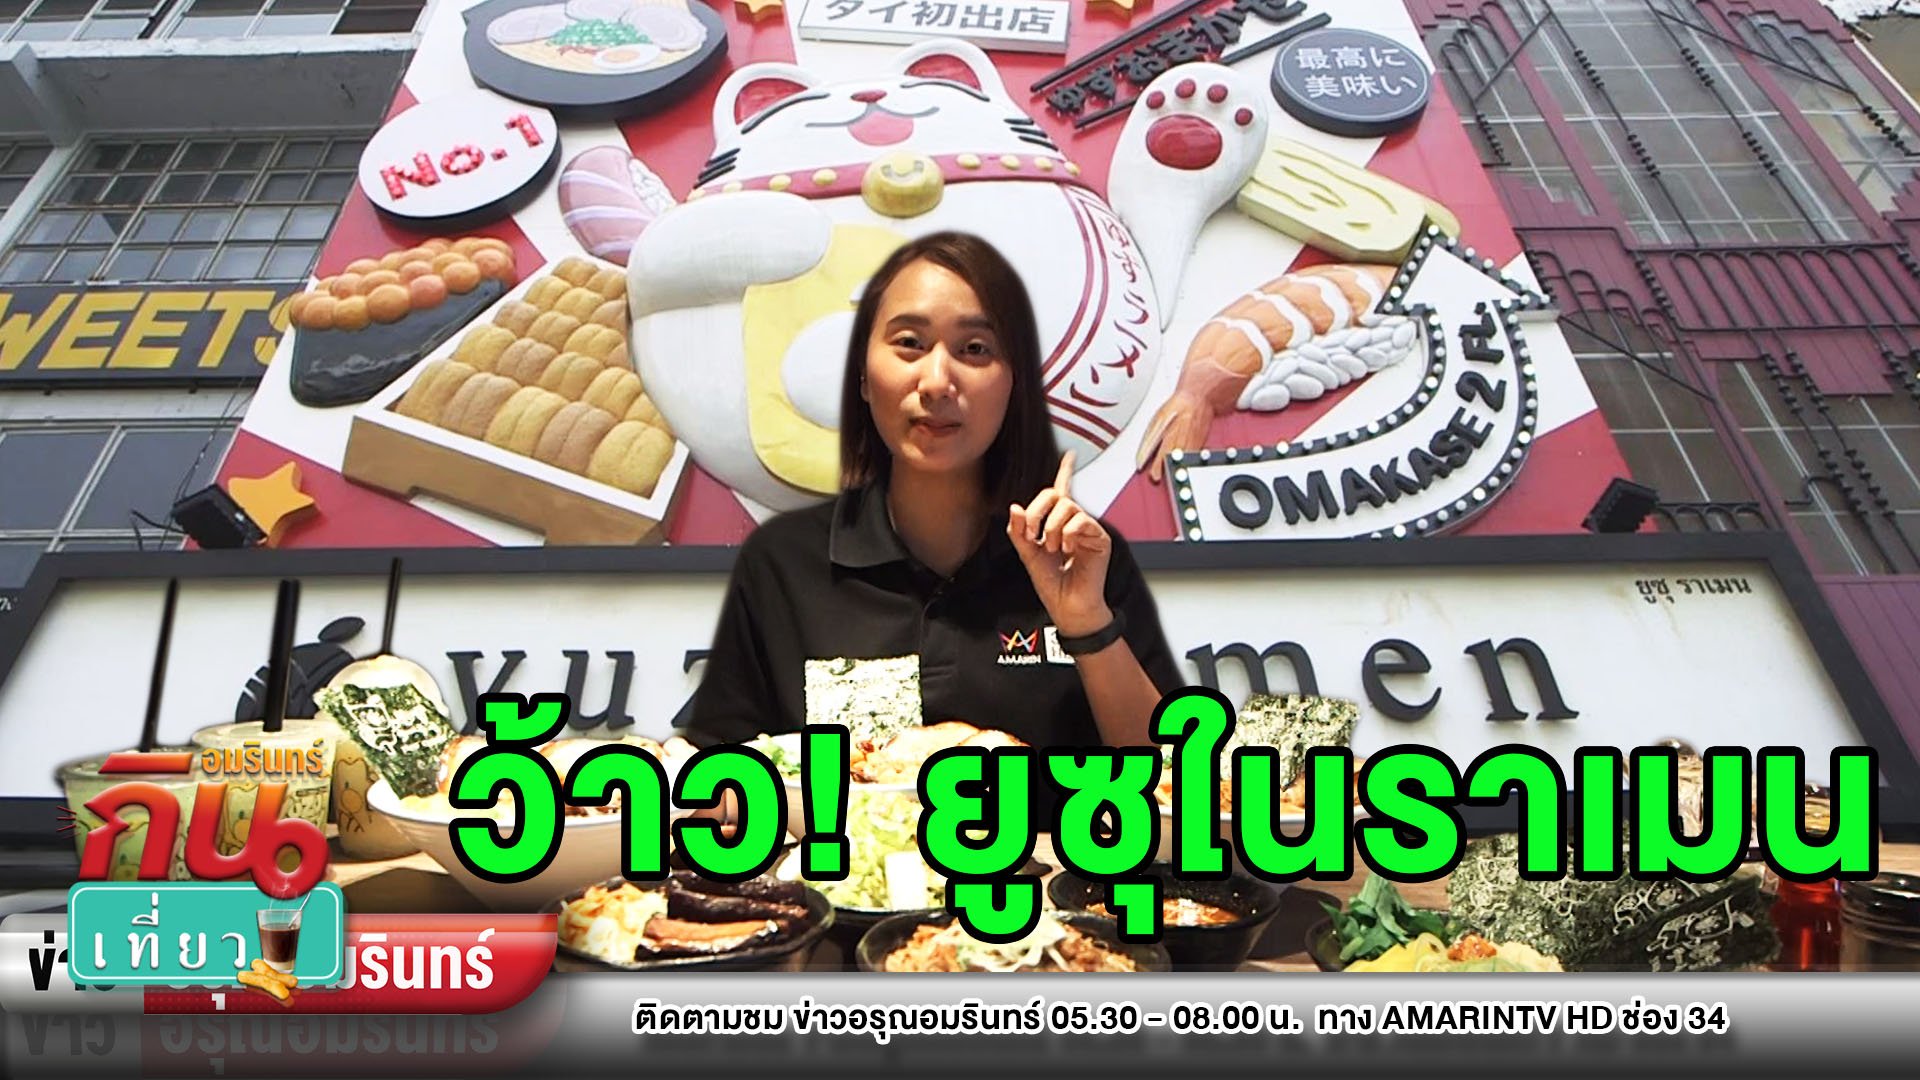 เจ้าแรกในไทย พาชิม “ยูซุราเมน” จัดจ้านเลือกเผ็ดได้เป็นระดับ | ข่าวอรุณอมรินทร์ | 14 มิ.ย. 63 | AMARIN TVHD34